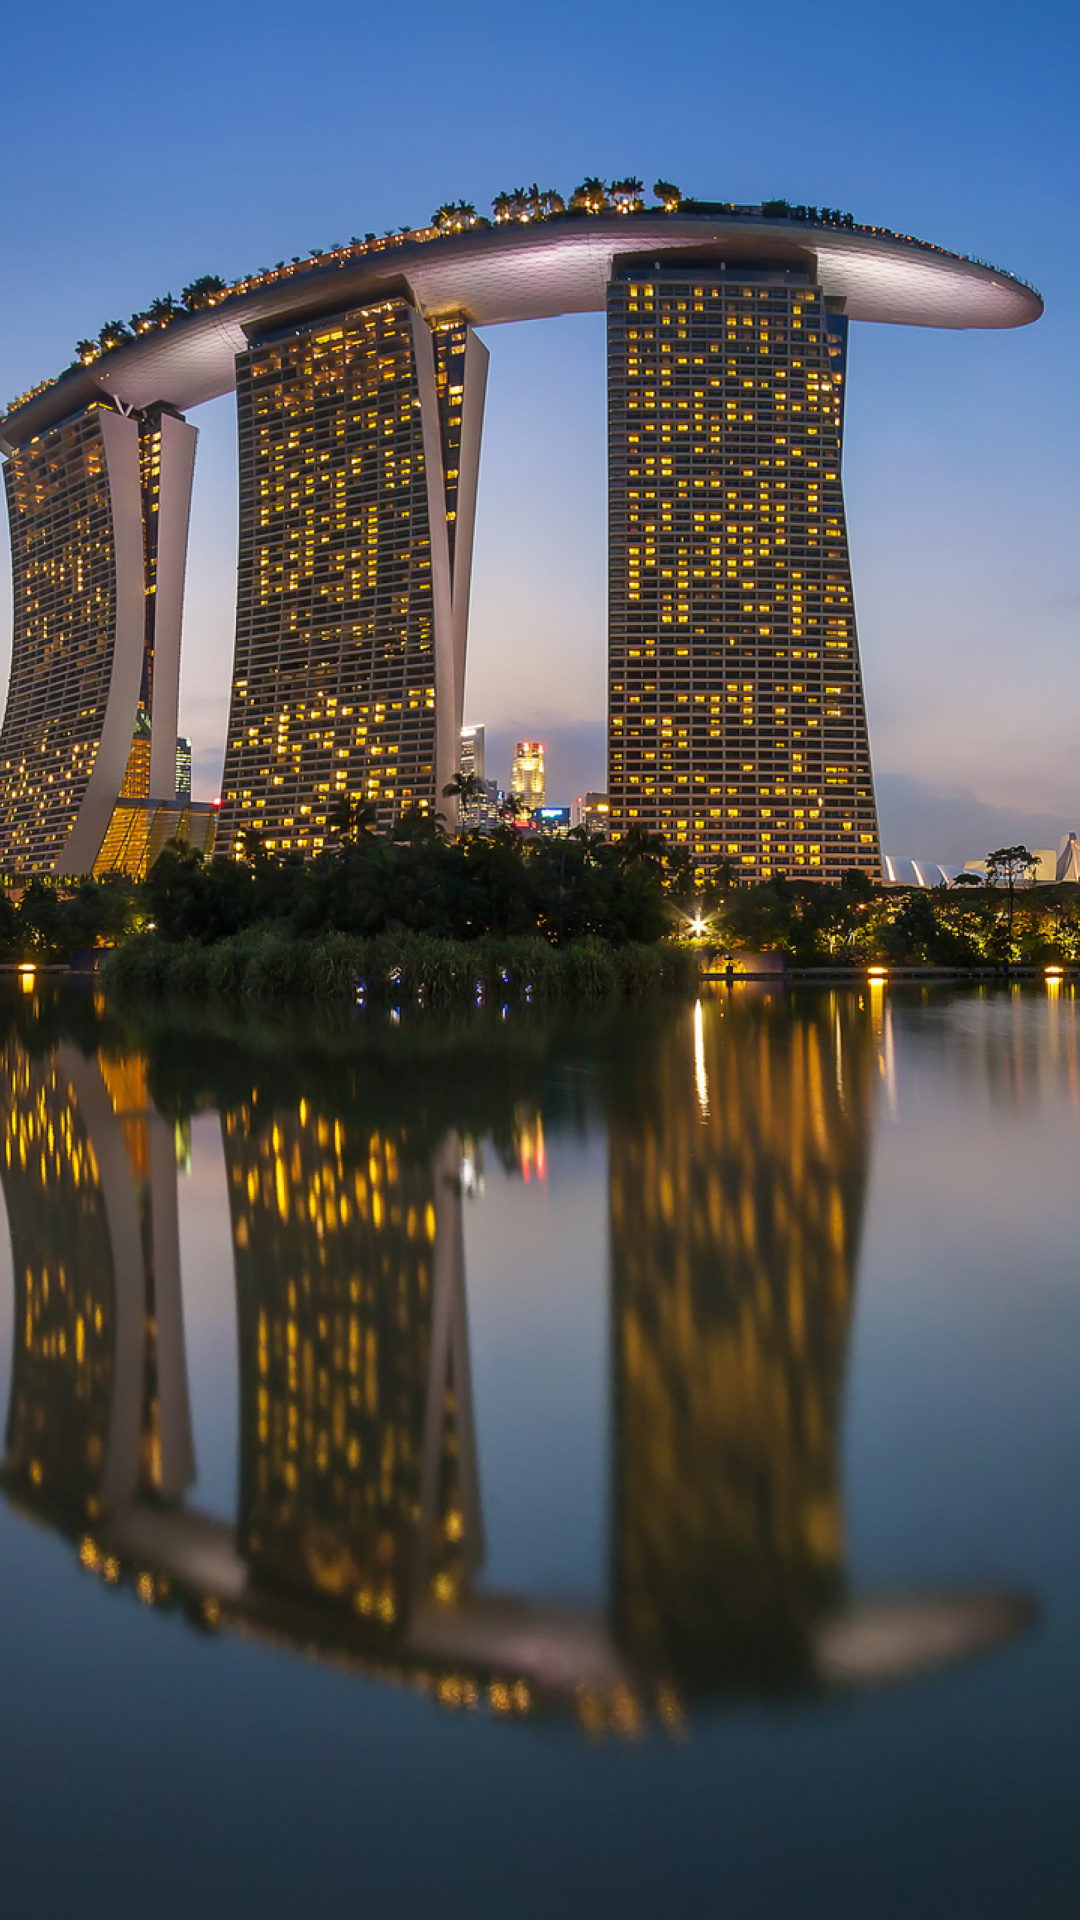 Обои Singapore Marina Bay Sands Tower 1080x1920